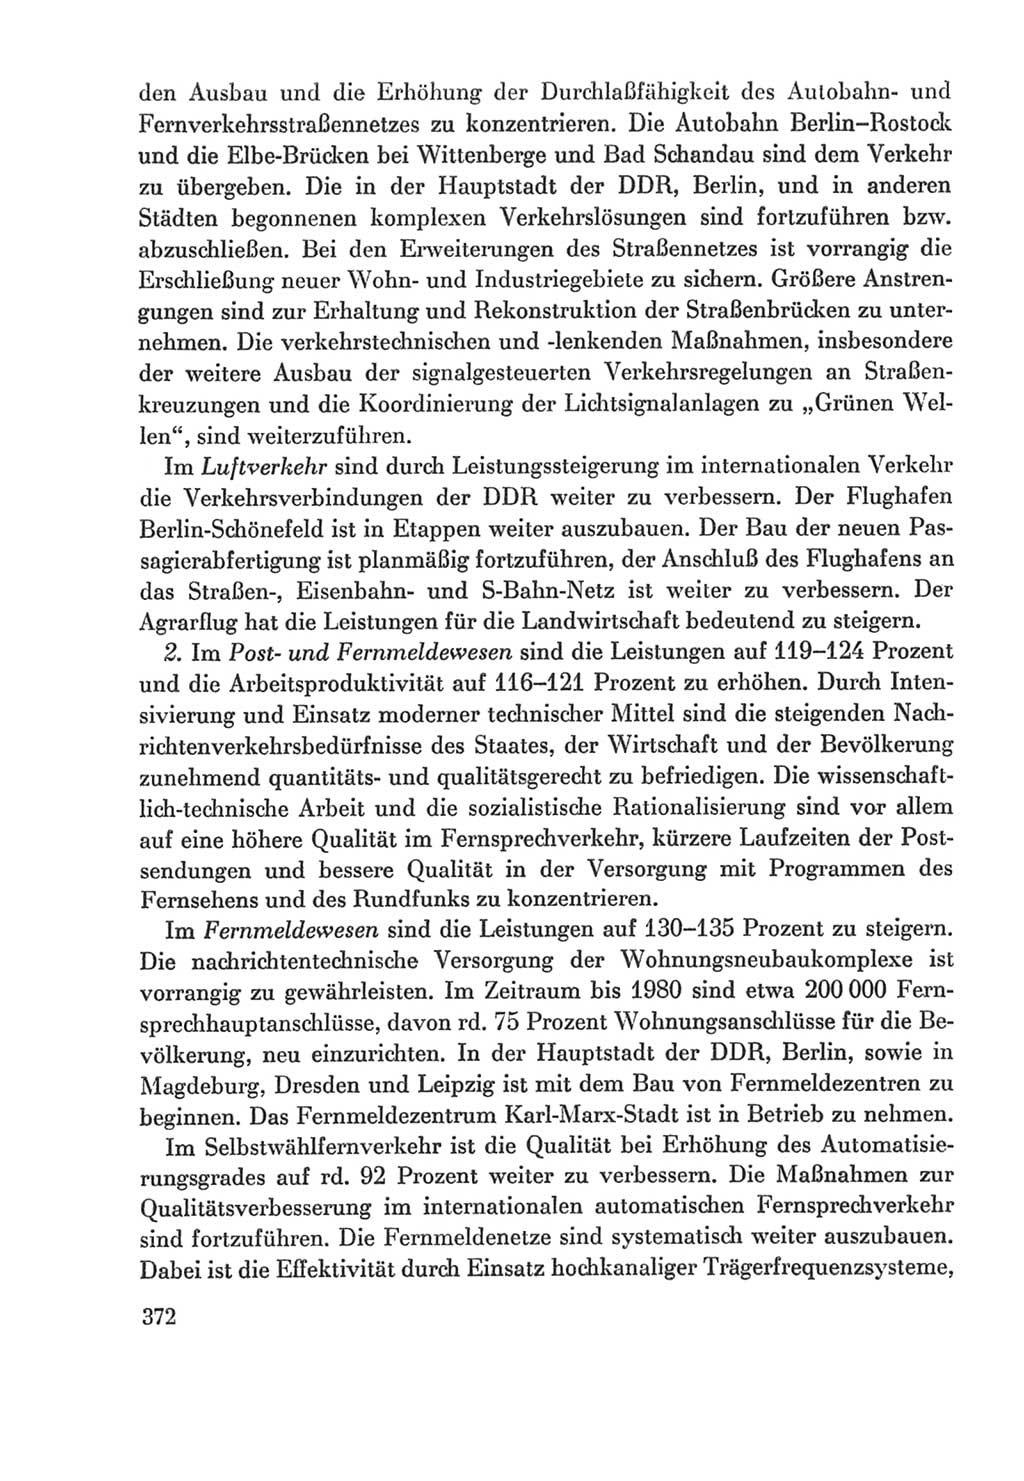 Protokoll der Verhandlungen des Ⅸ. Parteitages der Sozialistischen Einheitspartei Deutschlands (SED) [Deutsche Demokratische Republik (DDR)] 1976, Band 2, Seite 372 (Prot. Verh. Ⅸ. PT SED DDR 1976, Bd. 2, S. 372)